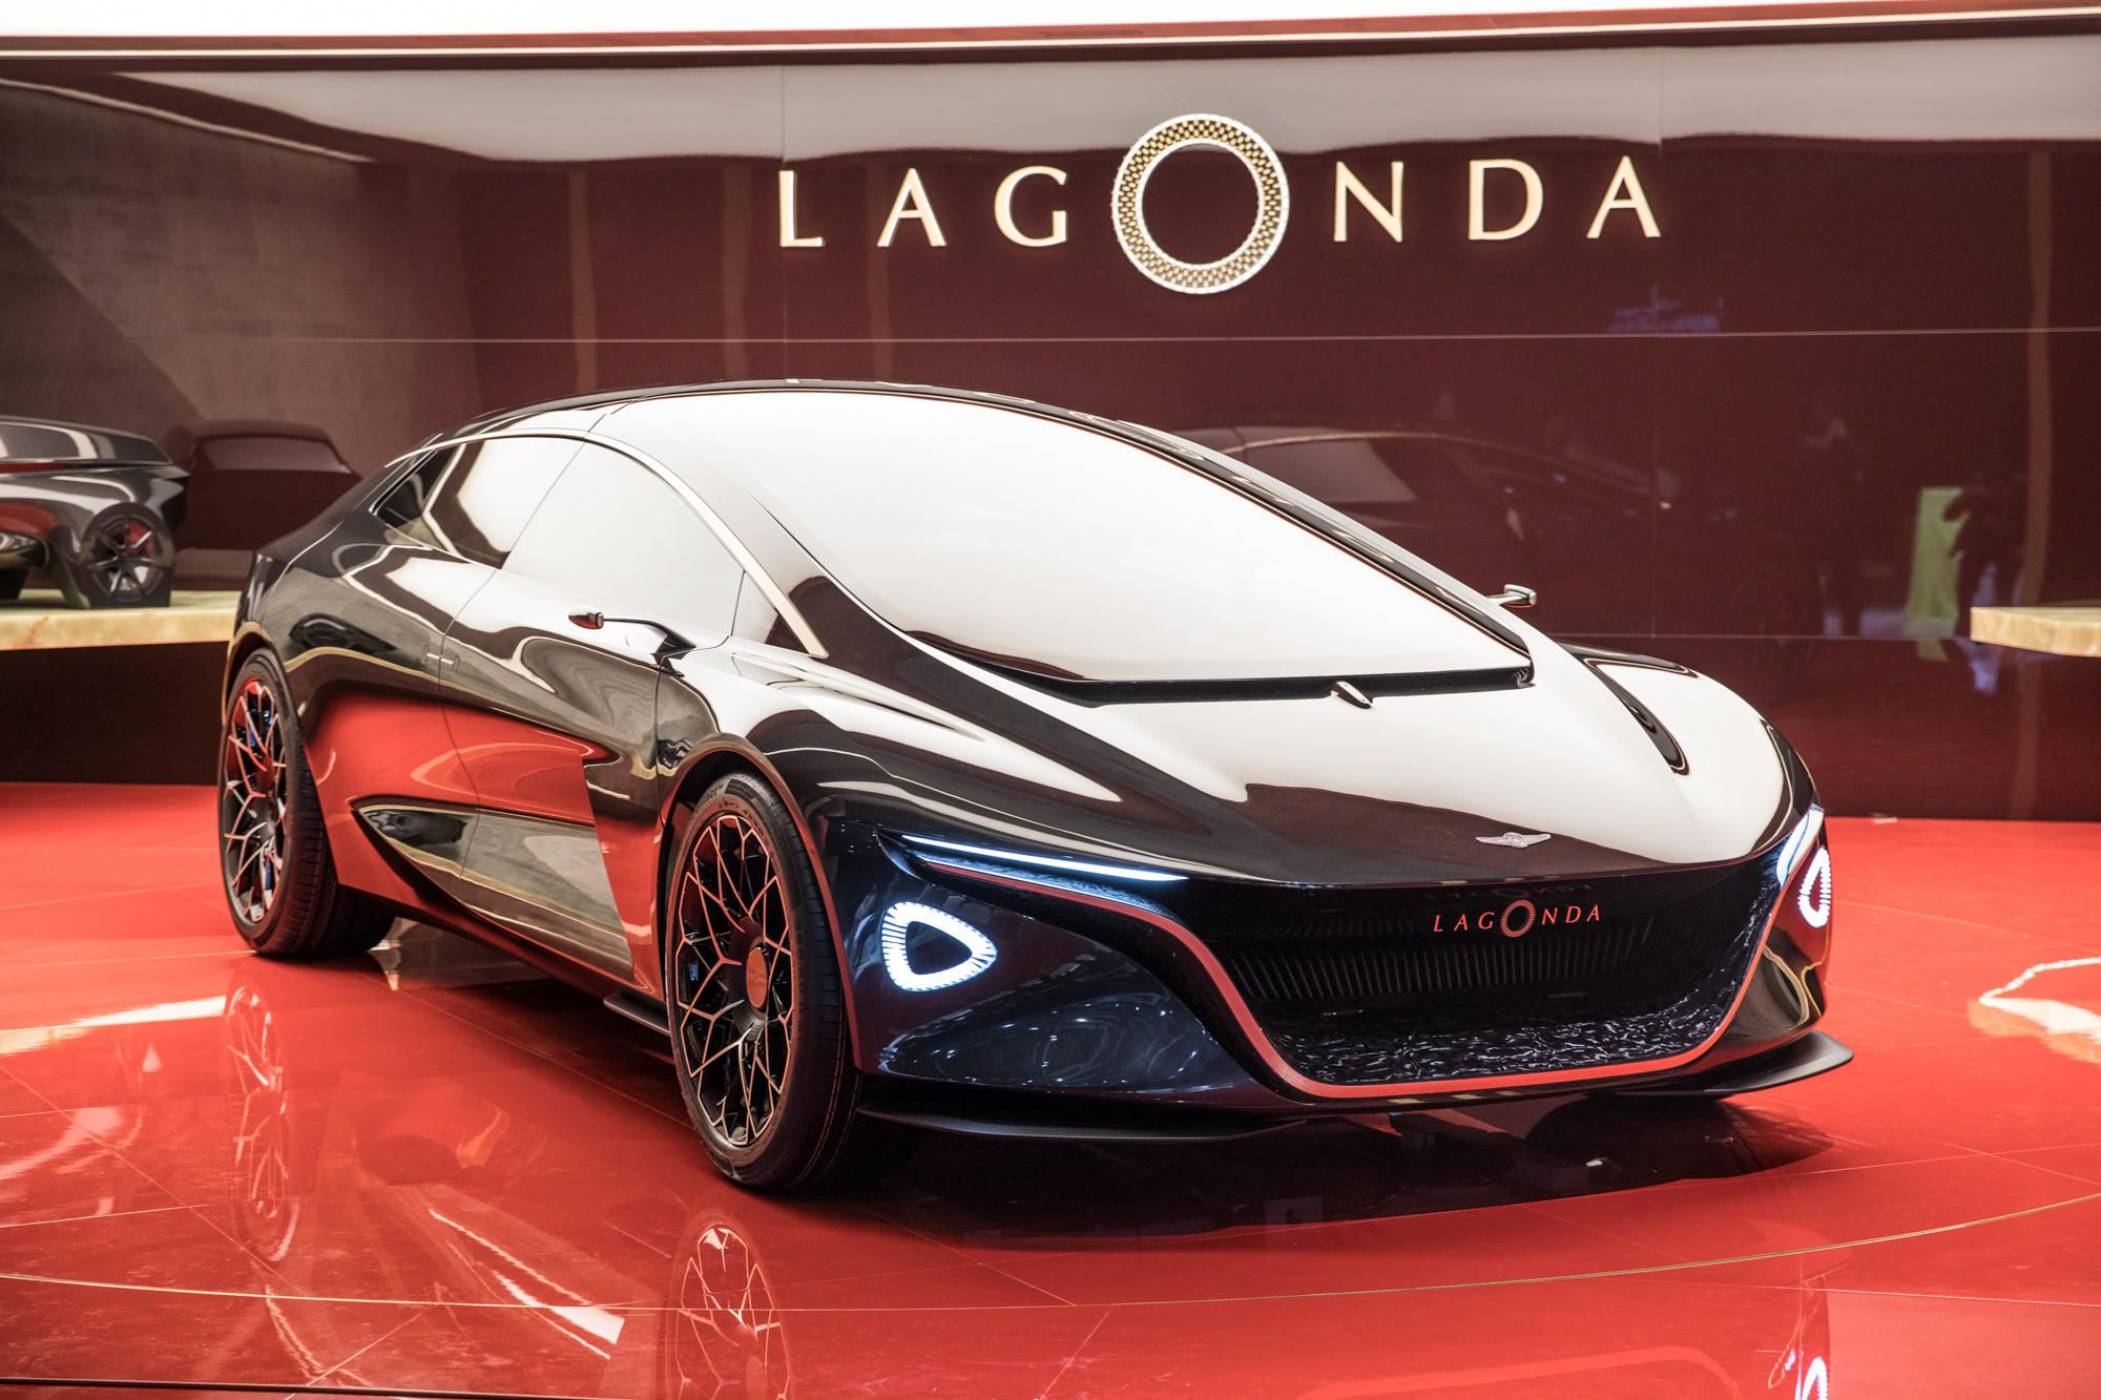 Aston Martin възражда Lagonda с луксозен автономен автомобил